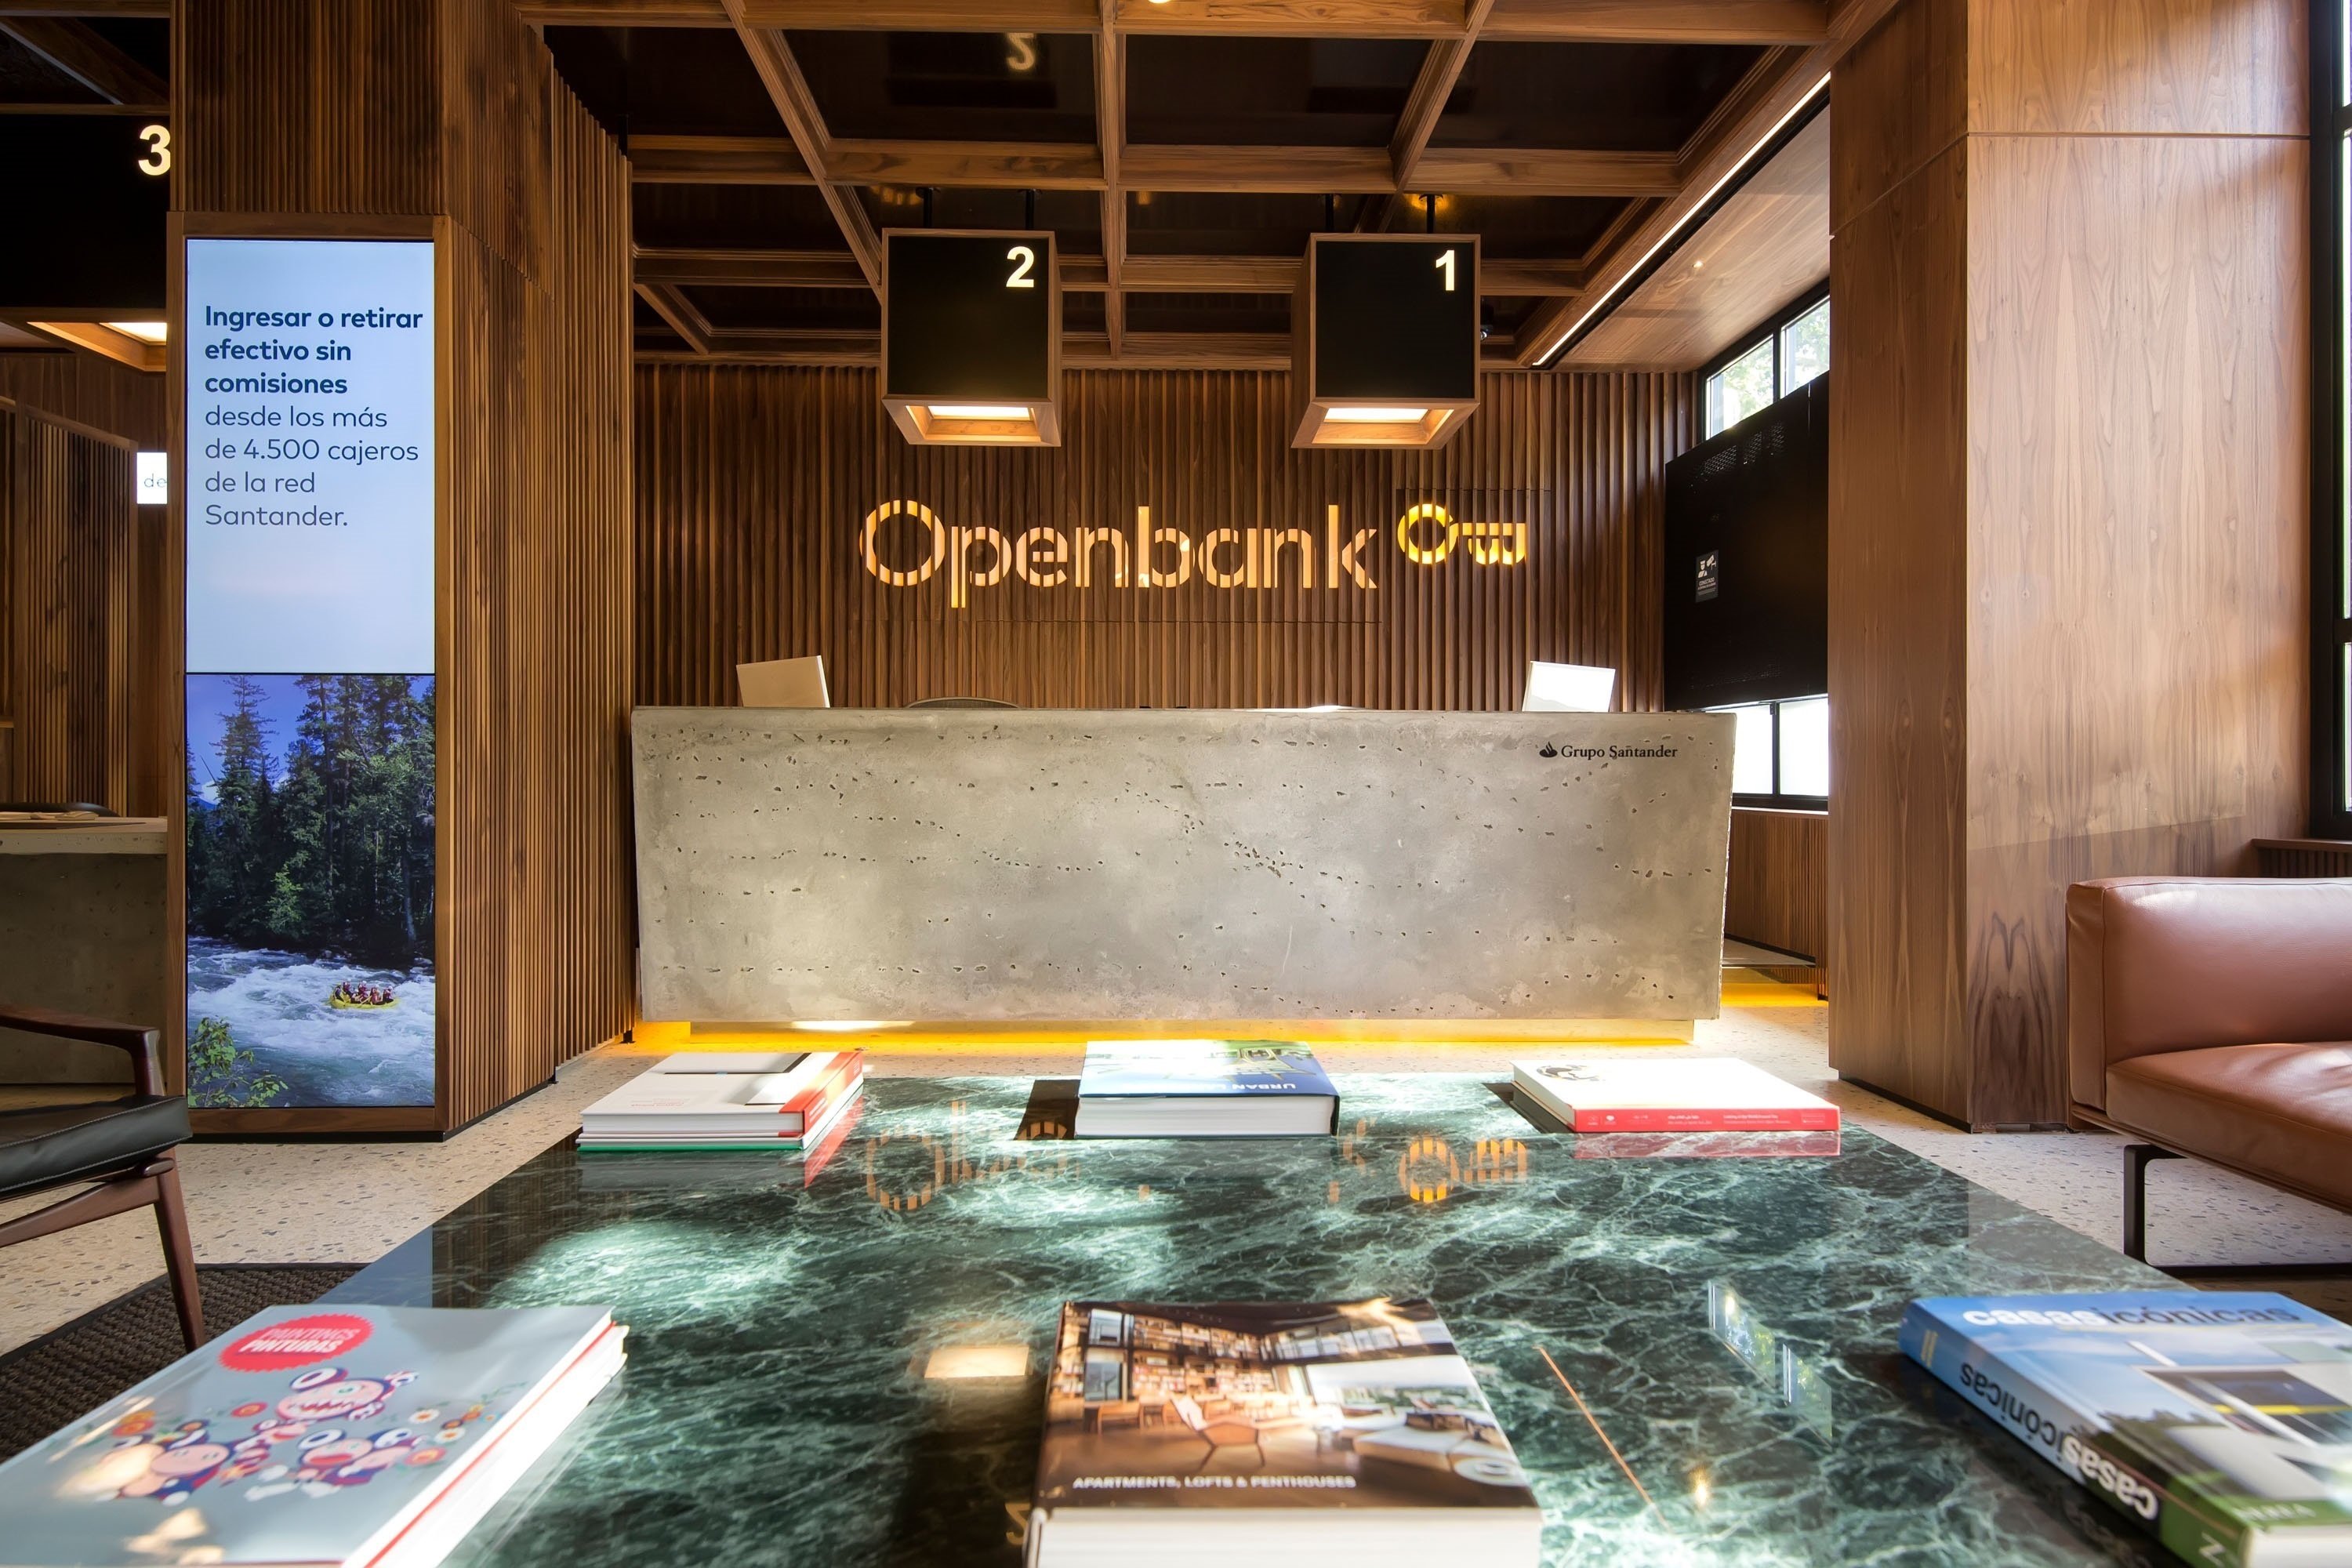 Una oficina de Openbank en Madrid